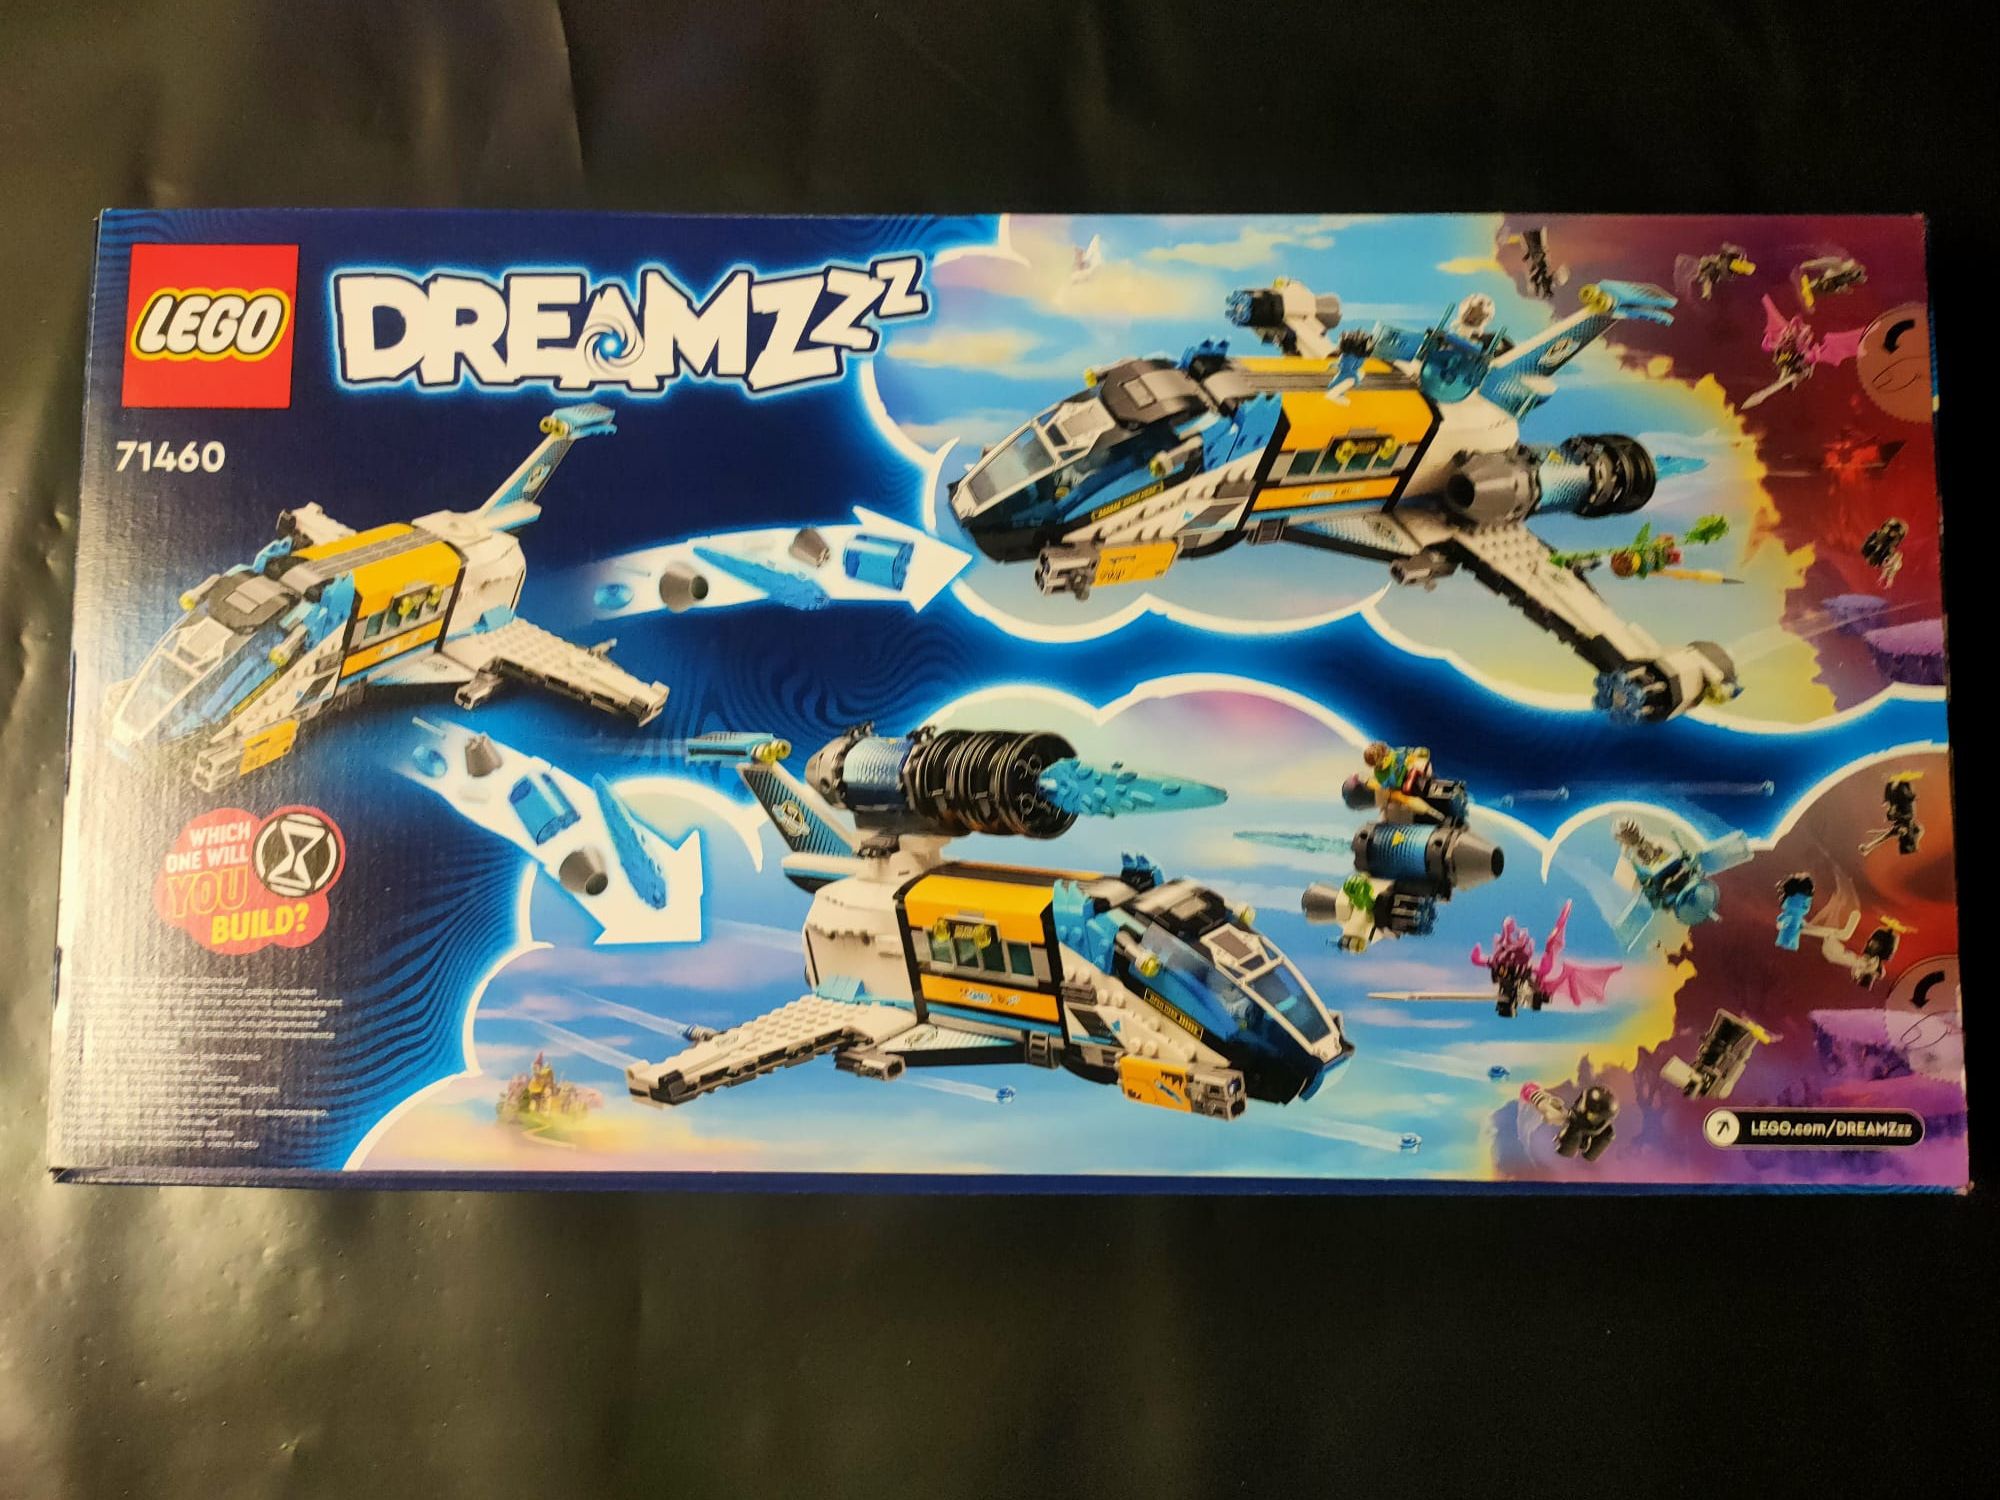 LEGO 71460 DREAMZzz Autocarro espacial do Stor Oz